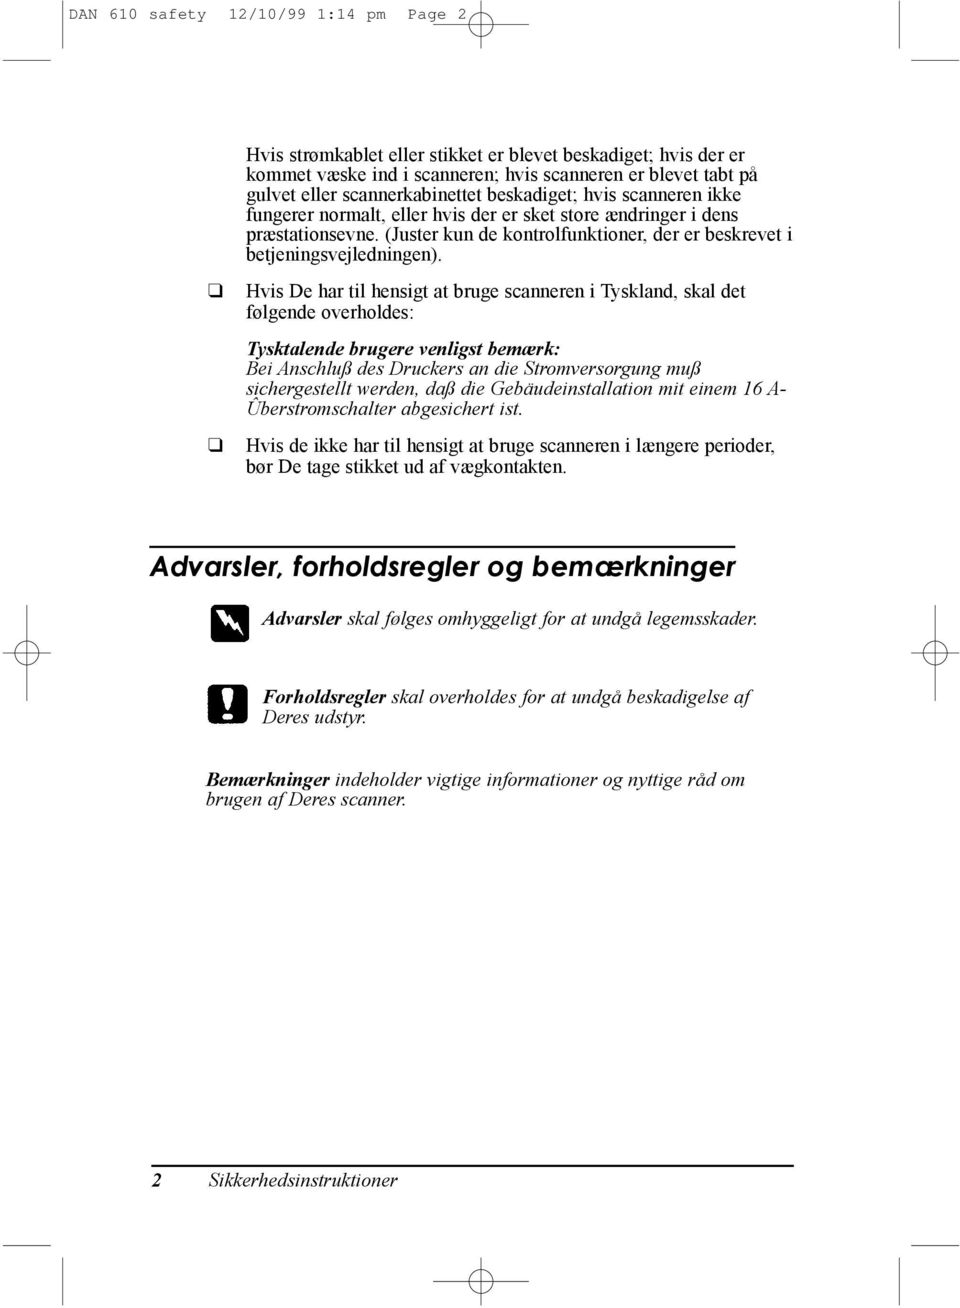 Hvis De har til hensigt at bruge scanneren i Tyskland, skal det f lgende overholdes: Tysktalende brugere venligst bem¾rk: Bei Anschlu des Druckers an die Stromversorgung mu sichergestellt werden, da